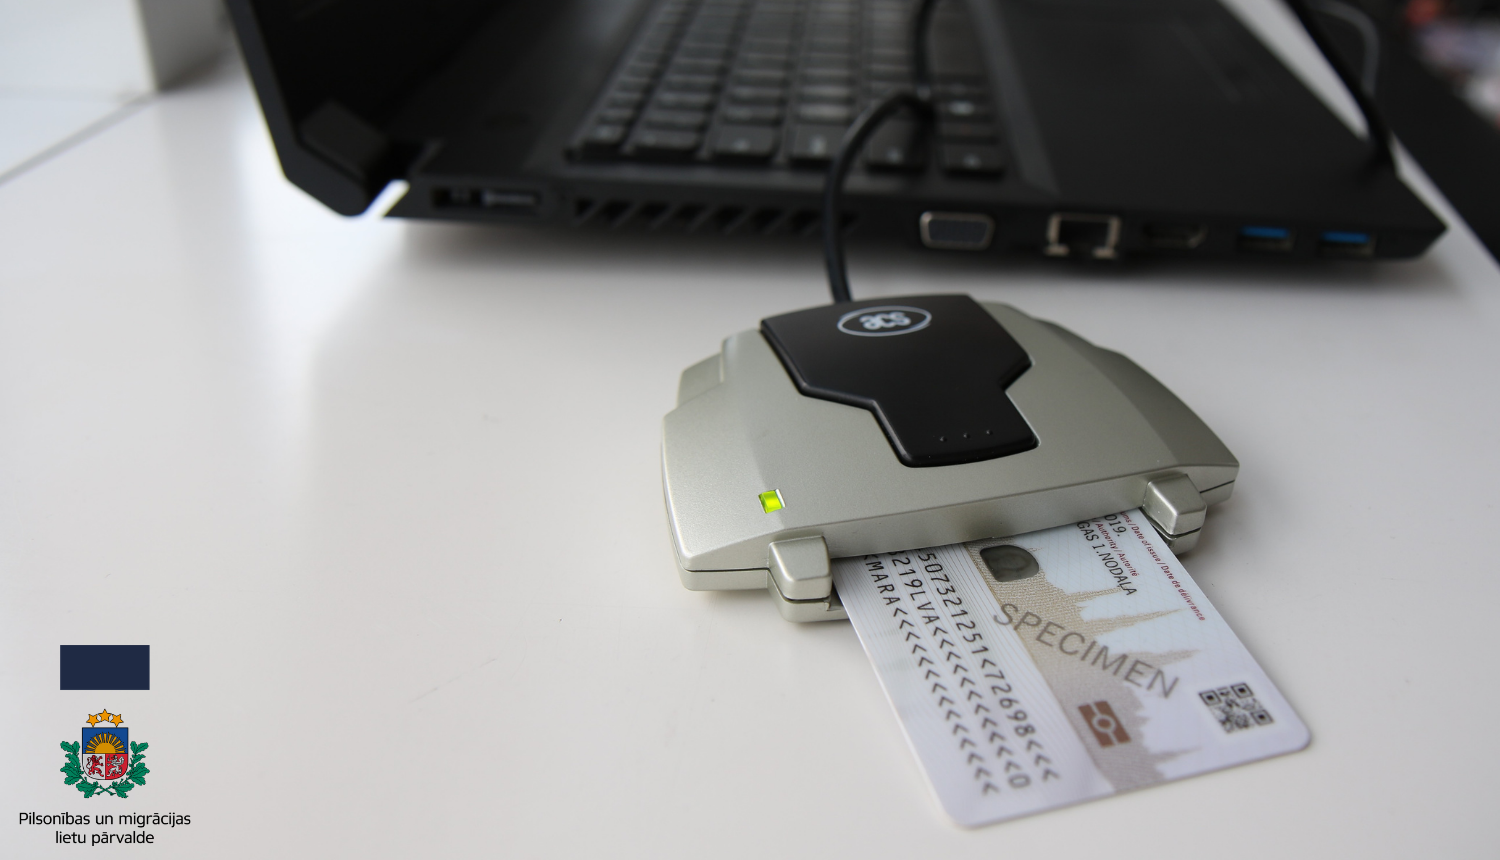 Portatīvais dators uz galda ar pieslēgtu karšu lasītāju, ar ievietotu tajā eID karti